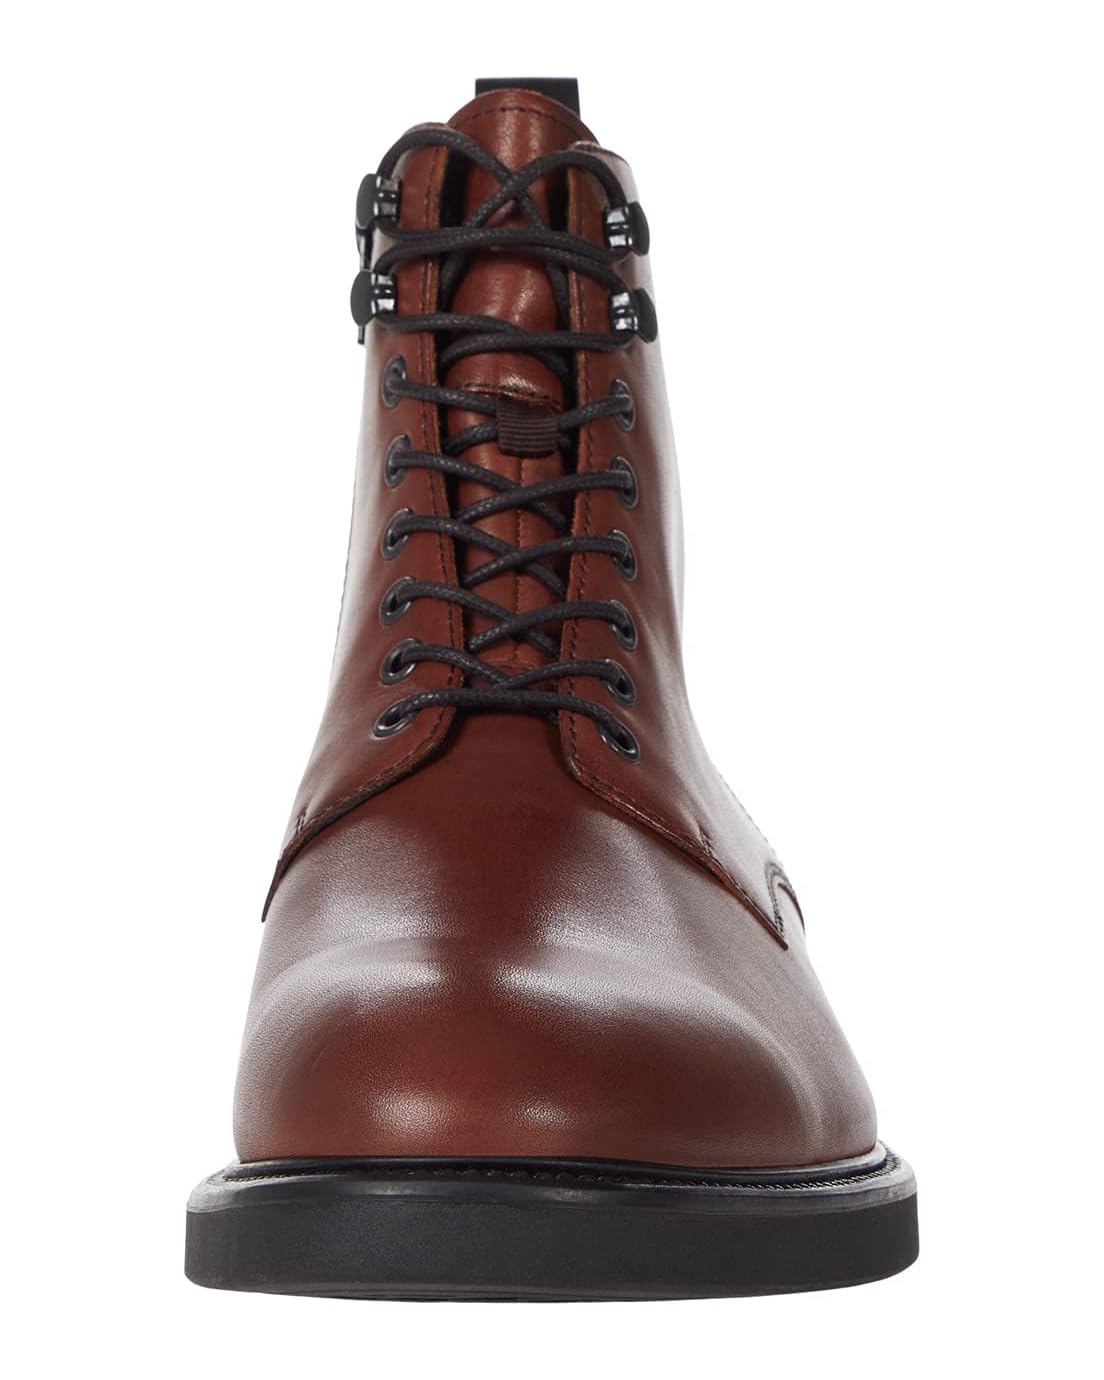  Vagabond Shoemakers Alex M Leather Lace Up Boot